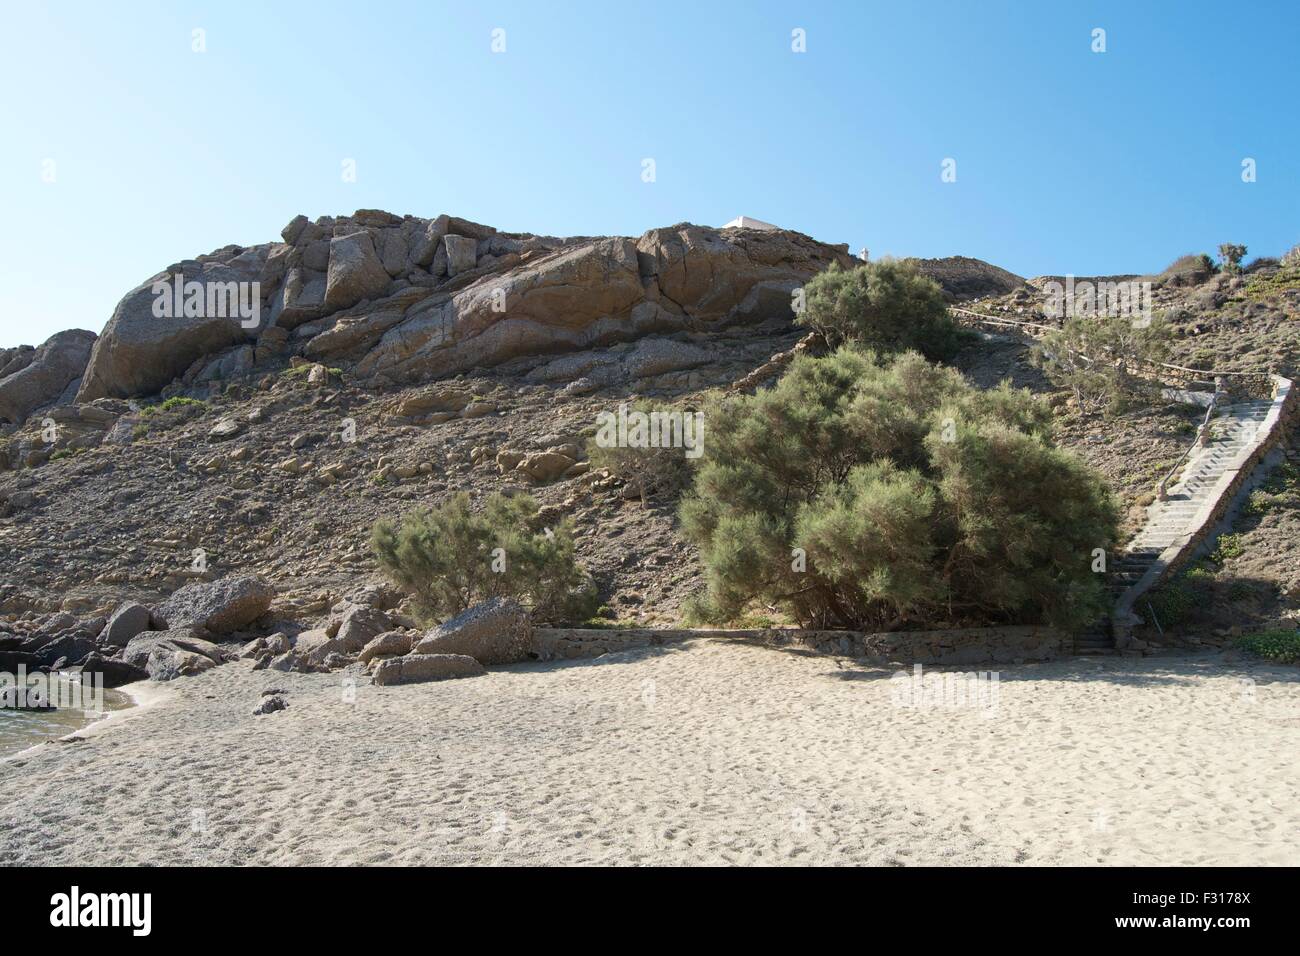 La plage de sable de l'île grecque de buissons Banque D'Images